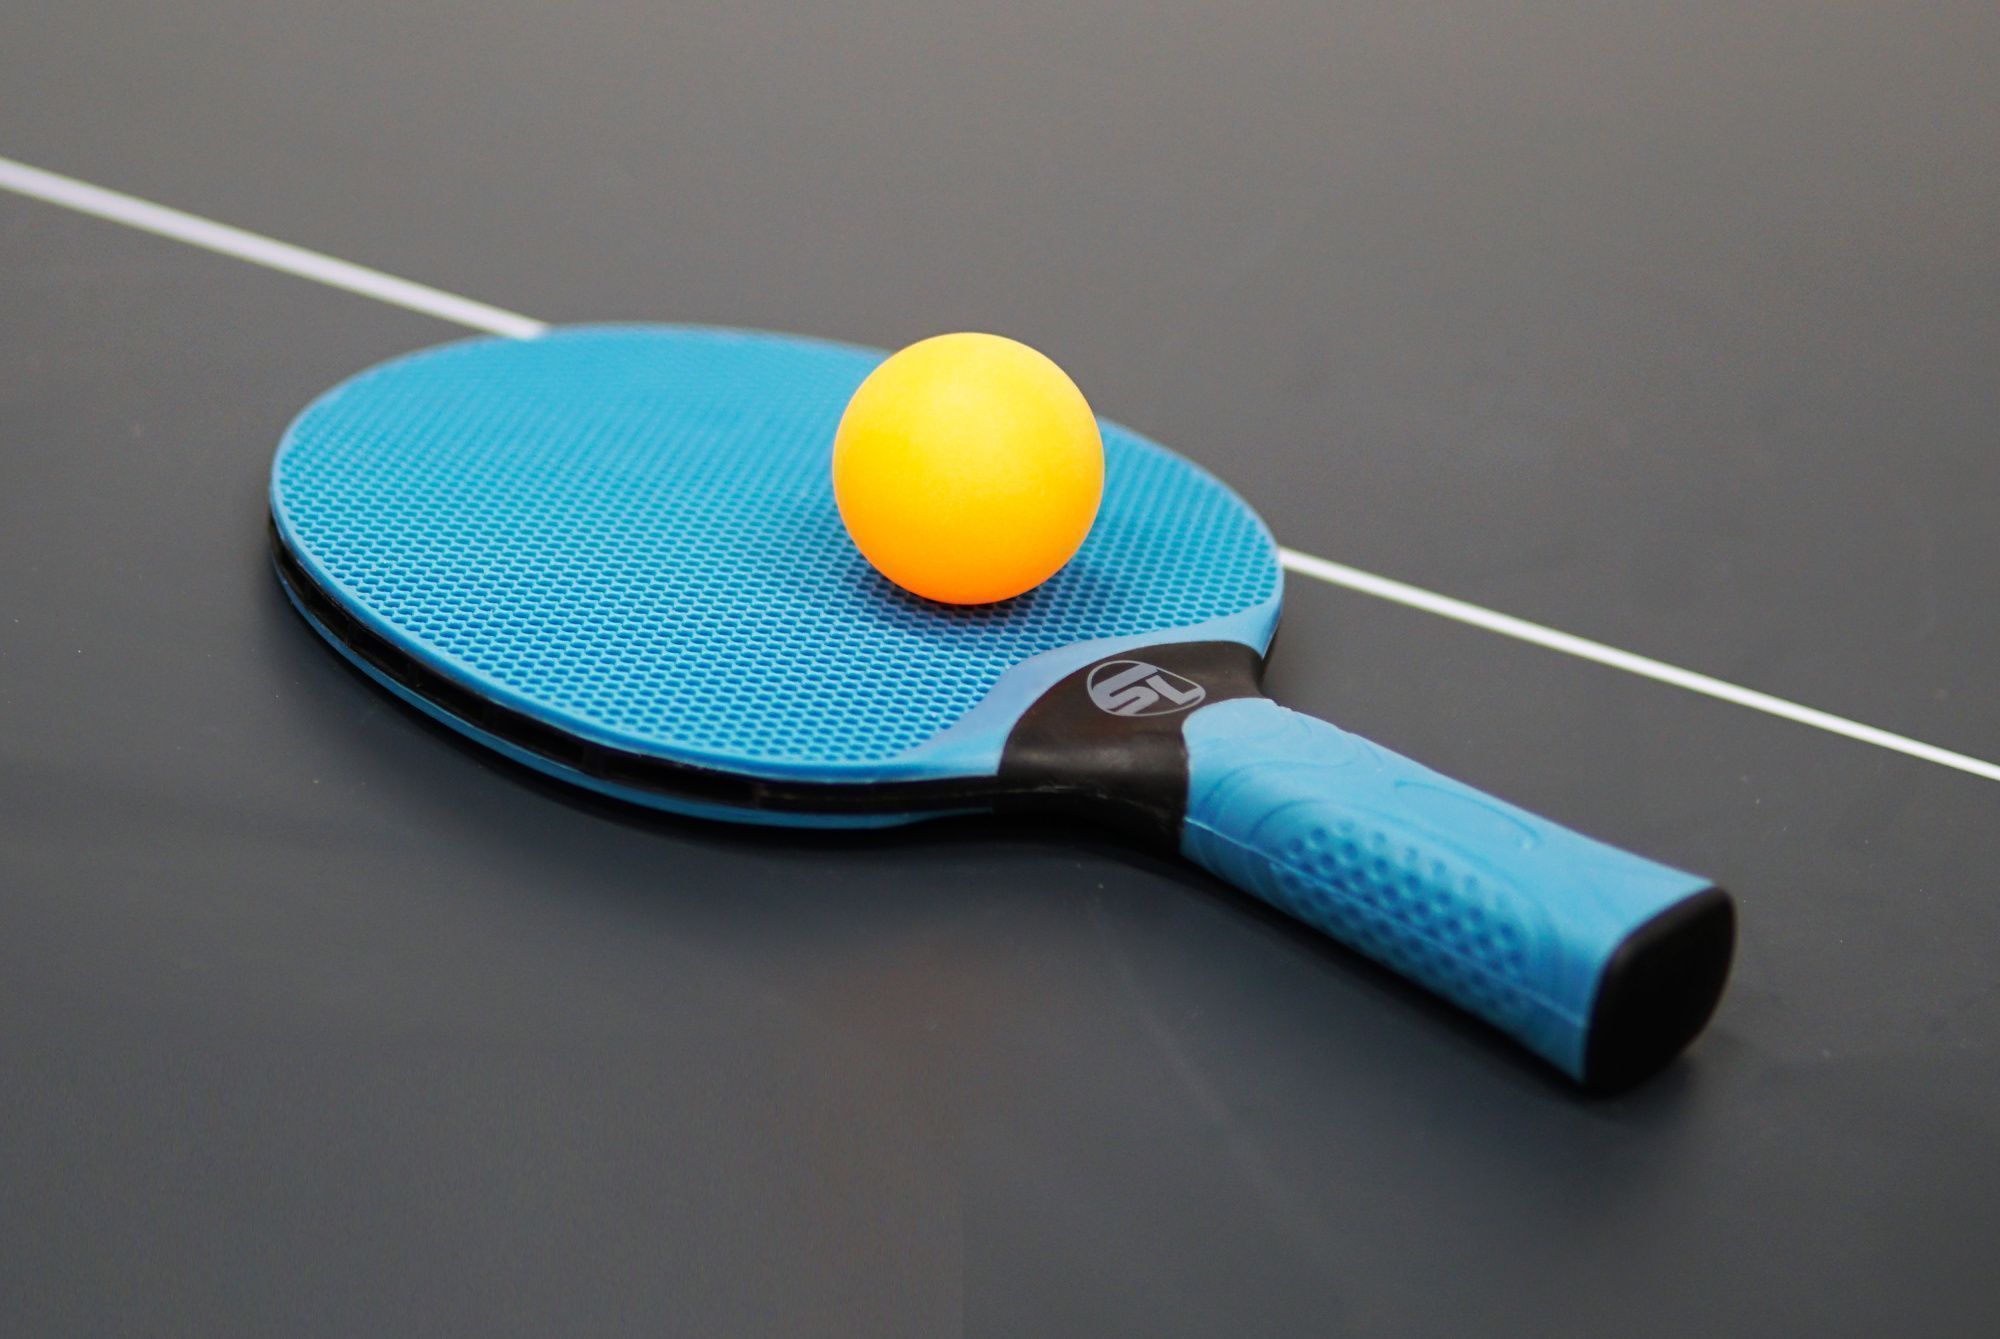 Теннисная ракетка Start line   plastic (blue)